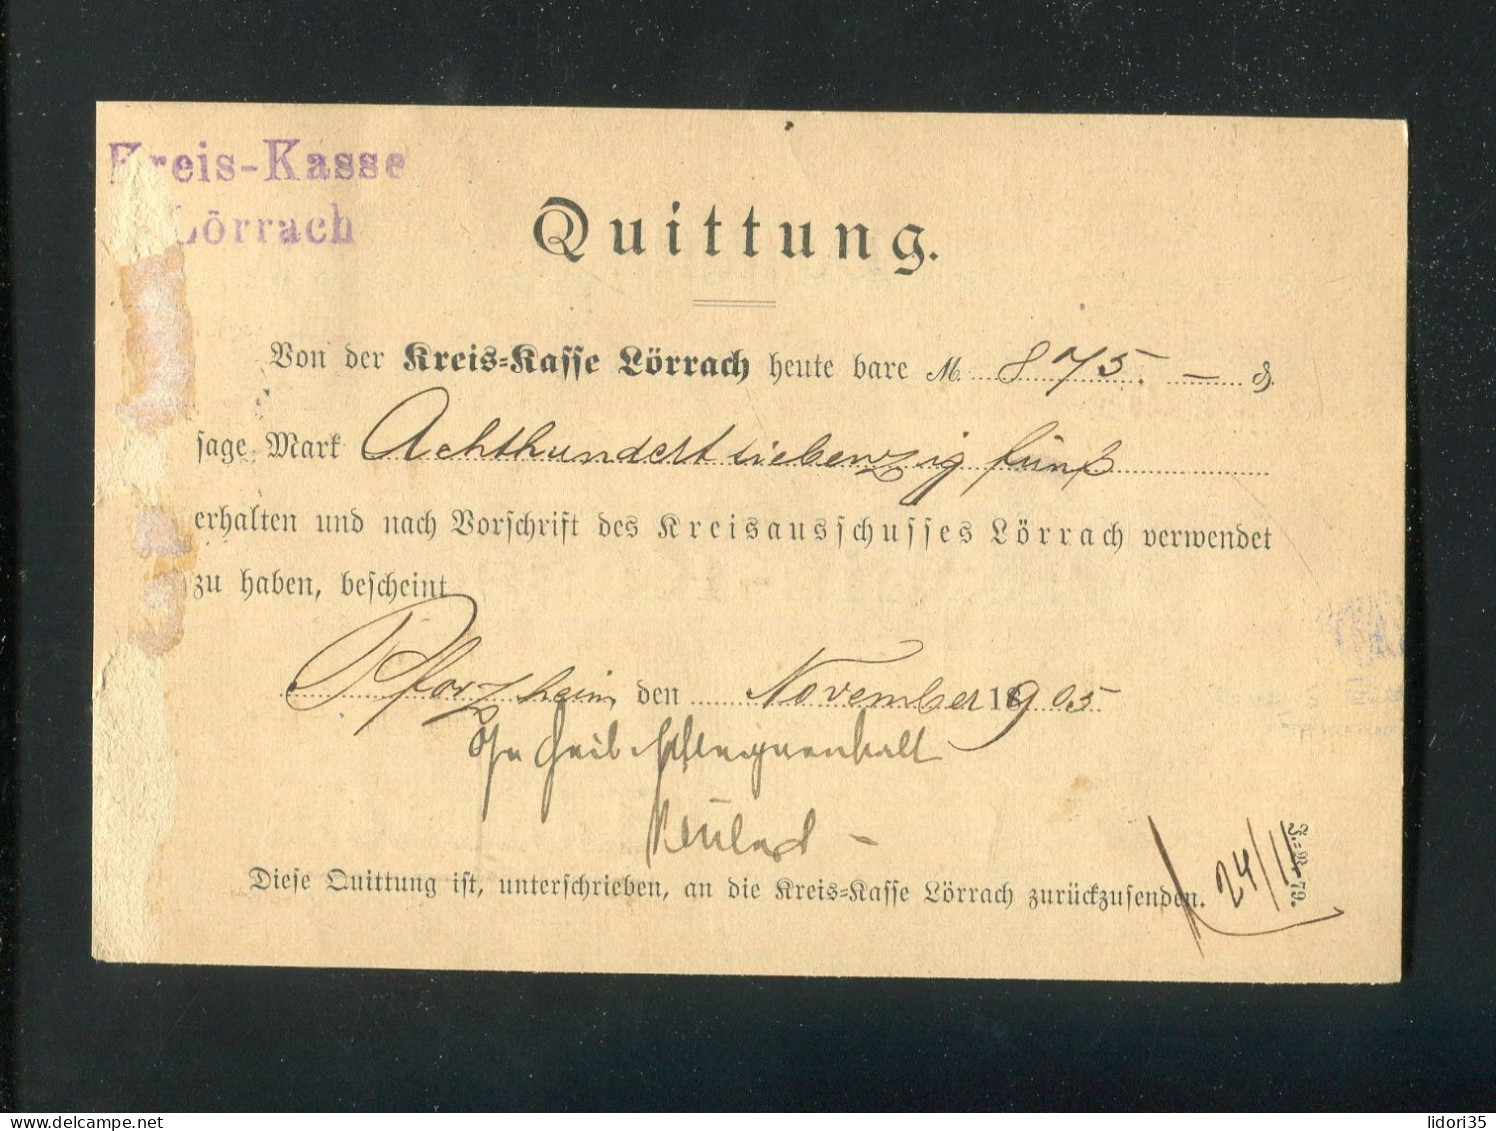 "DEUTSCHES REICH" 1905, Dienstmarke Mi. 11 EF Auf Postkarte Mit Stegstempel "PFORZHEIM" Nach Loerrach (L2011) - Dienstzegels